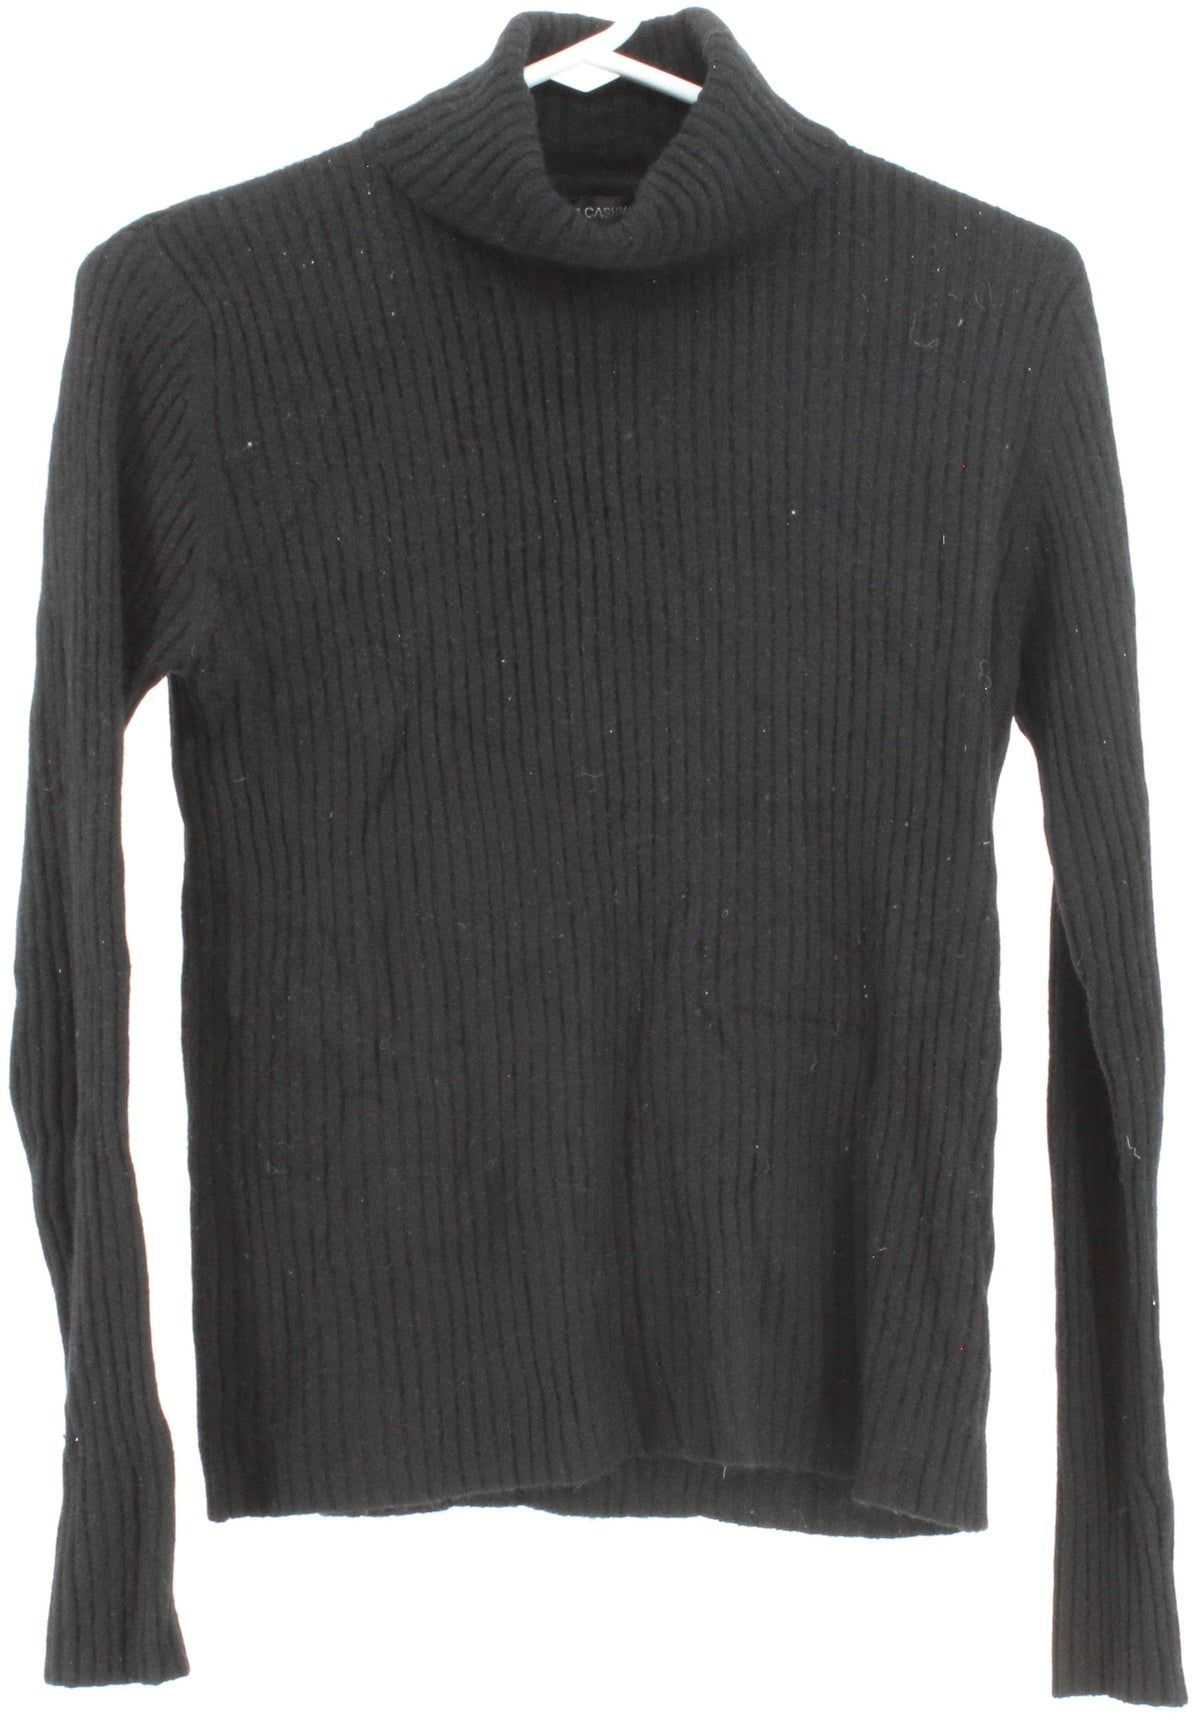 Autumn Cashmere Black Turtleneck Cashmere Sweater